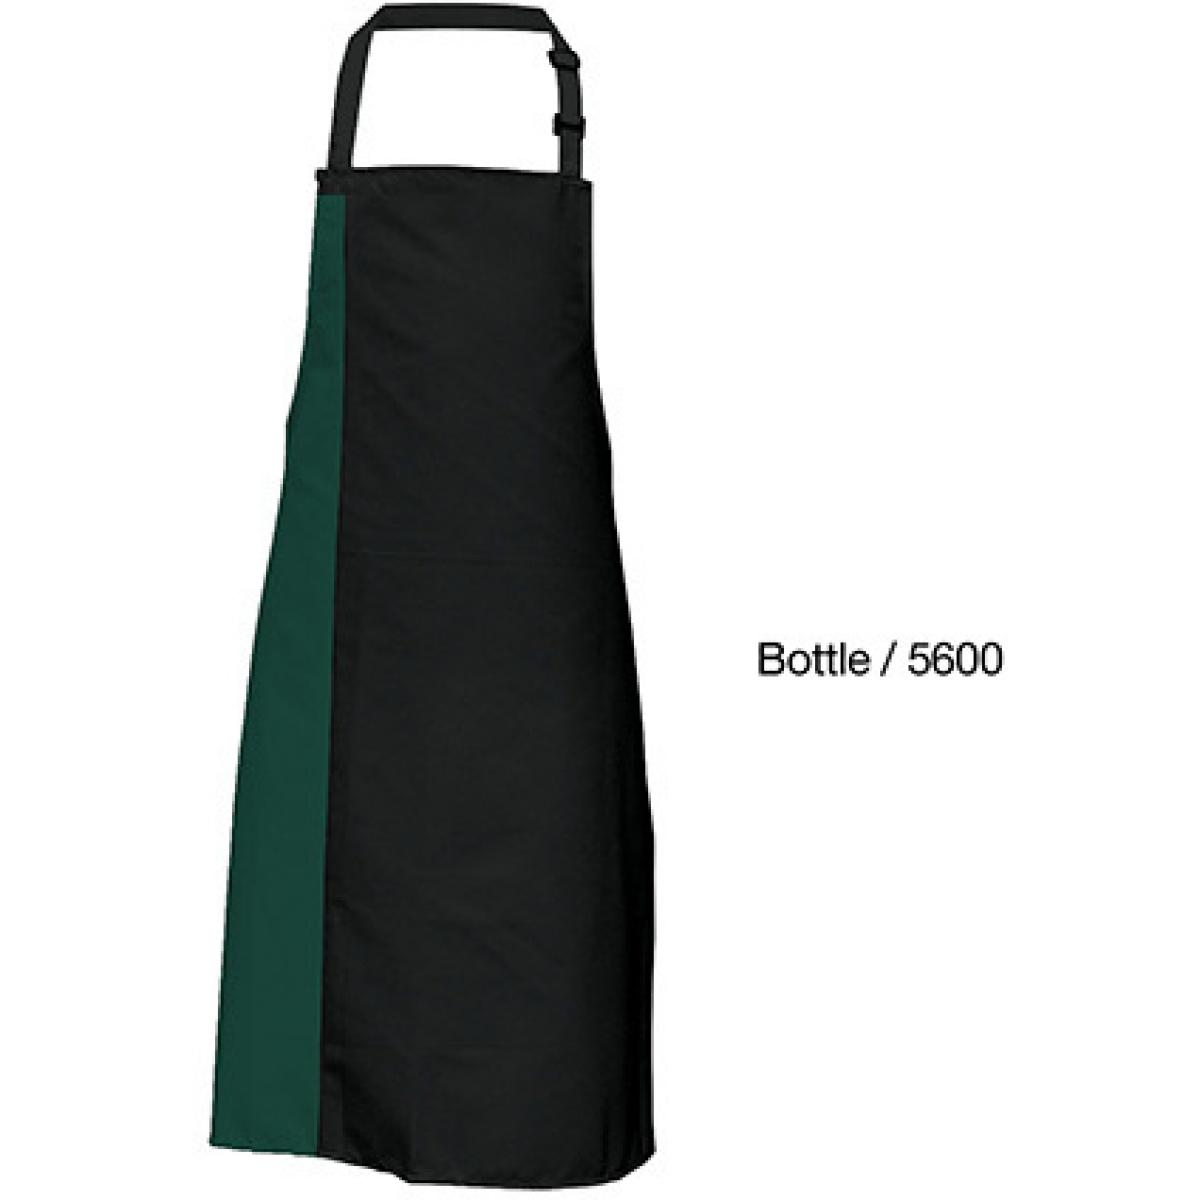 Hersteller: Link Kitchen Wear Herstellernummer: DS8572 Artikelbezeichnung: Duo Apron - 72 x 85 cm - Waschbar bis 60 °C Farbe: Black/Bottle (ca. Pantone 560)